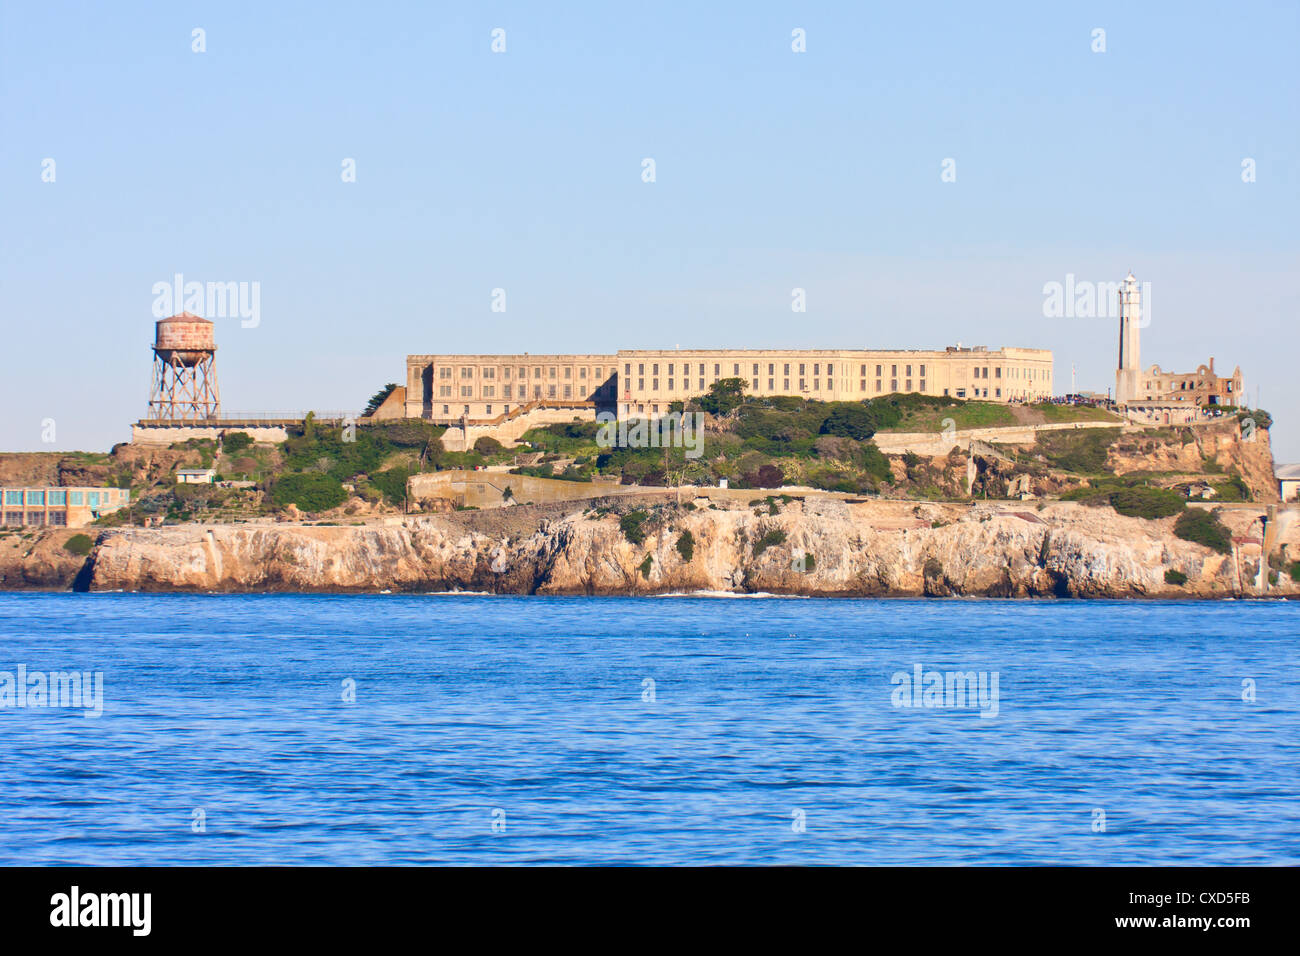 Alcatraz island - Famous prison in San Francisco Stock Photo